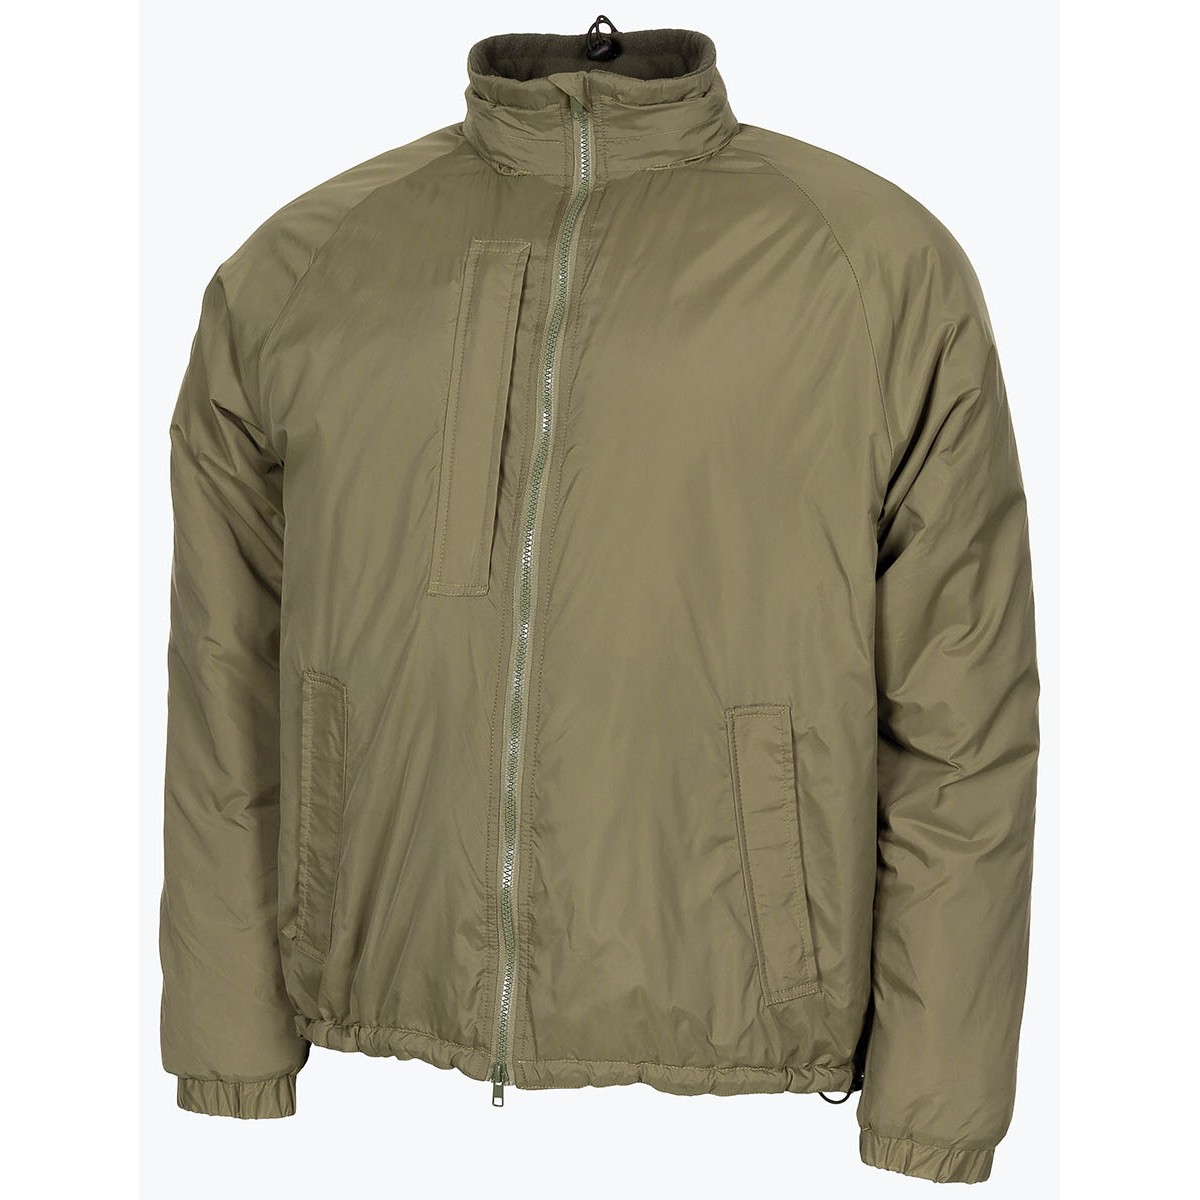 Bunda zateplovací zelená GB Softie Thermal Jacket OD Green MFH® Adventure Velikost: 3XL